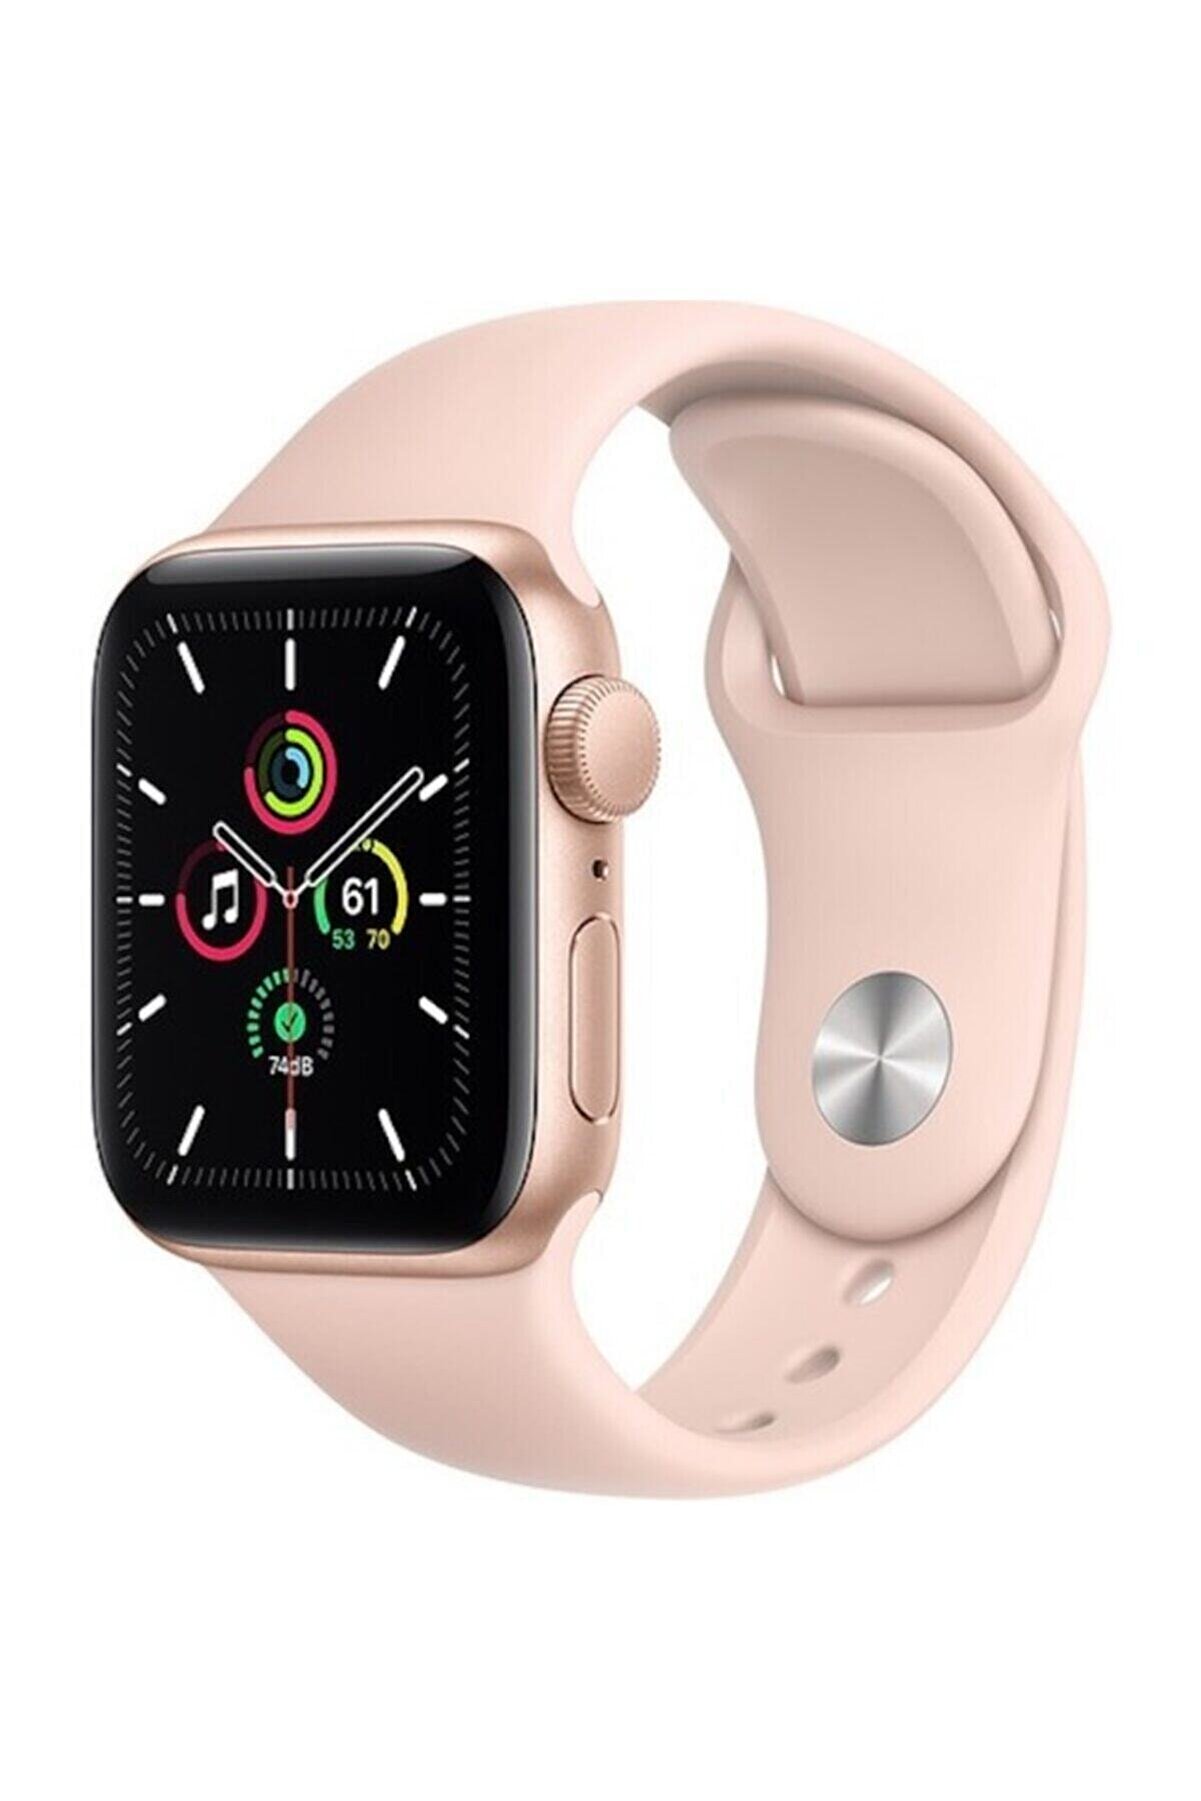 Apple Watch Se Gps 44 Mm Altın Rengi Alüminyum Kasa Ve Kum Pembesi Spor Kordon